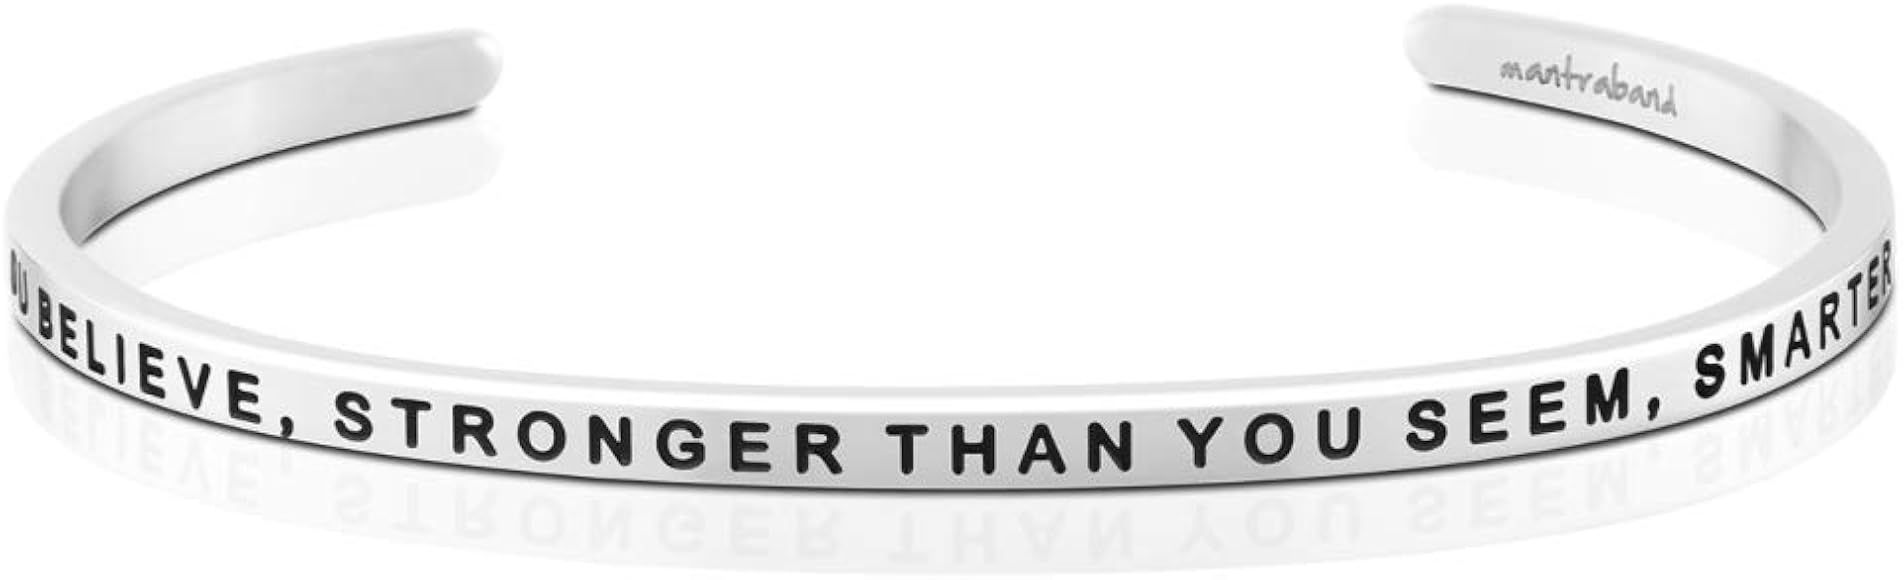 Bracelet - Braver, Stronger, Smarter - Inspirational Engraved Adjustable Mantra Band Cuff Bracele... | Amazon (US)